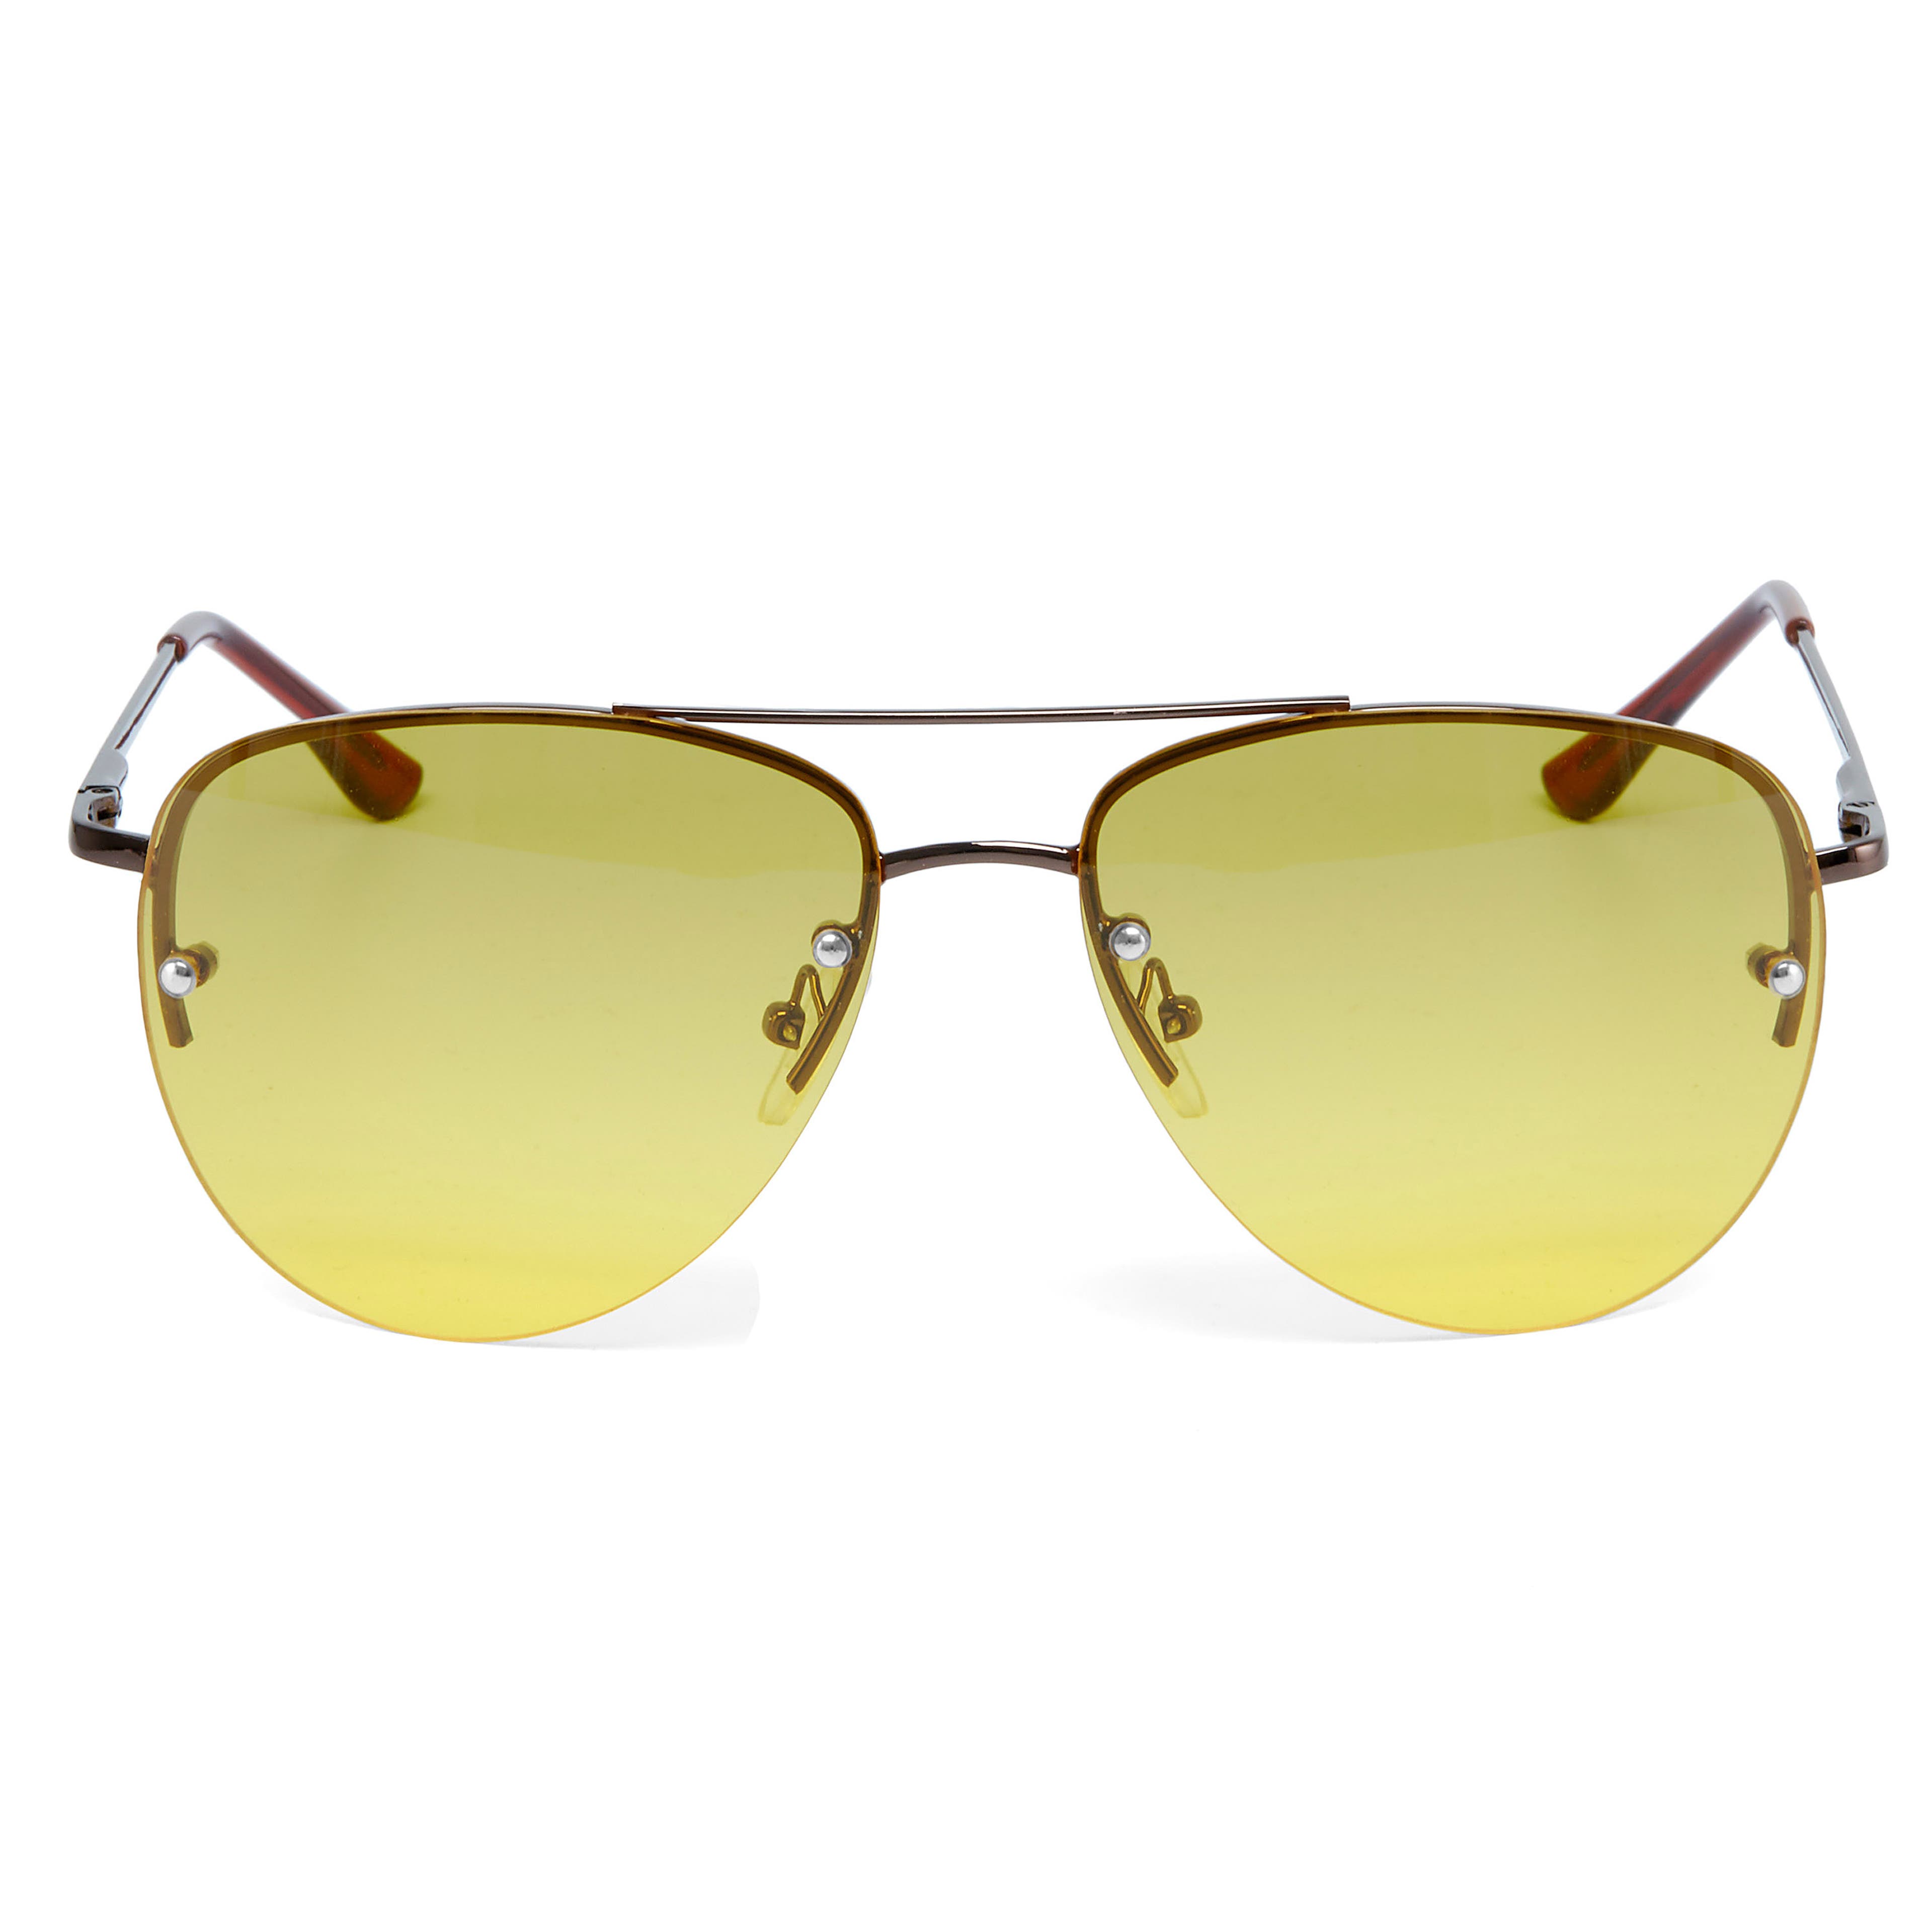 Авиаторски слънчеви очила в кафяво и жълто